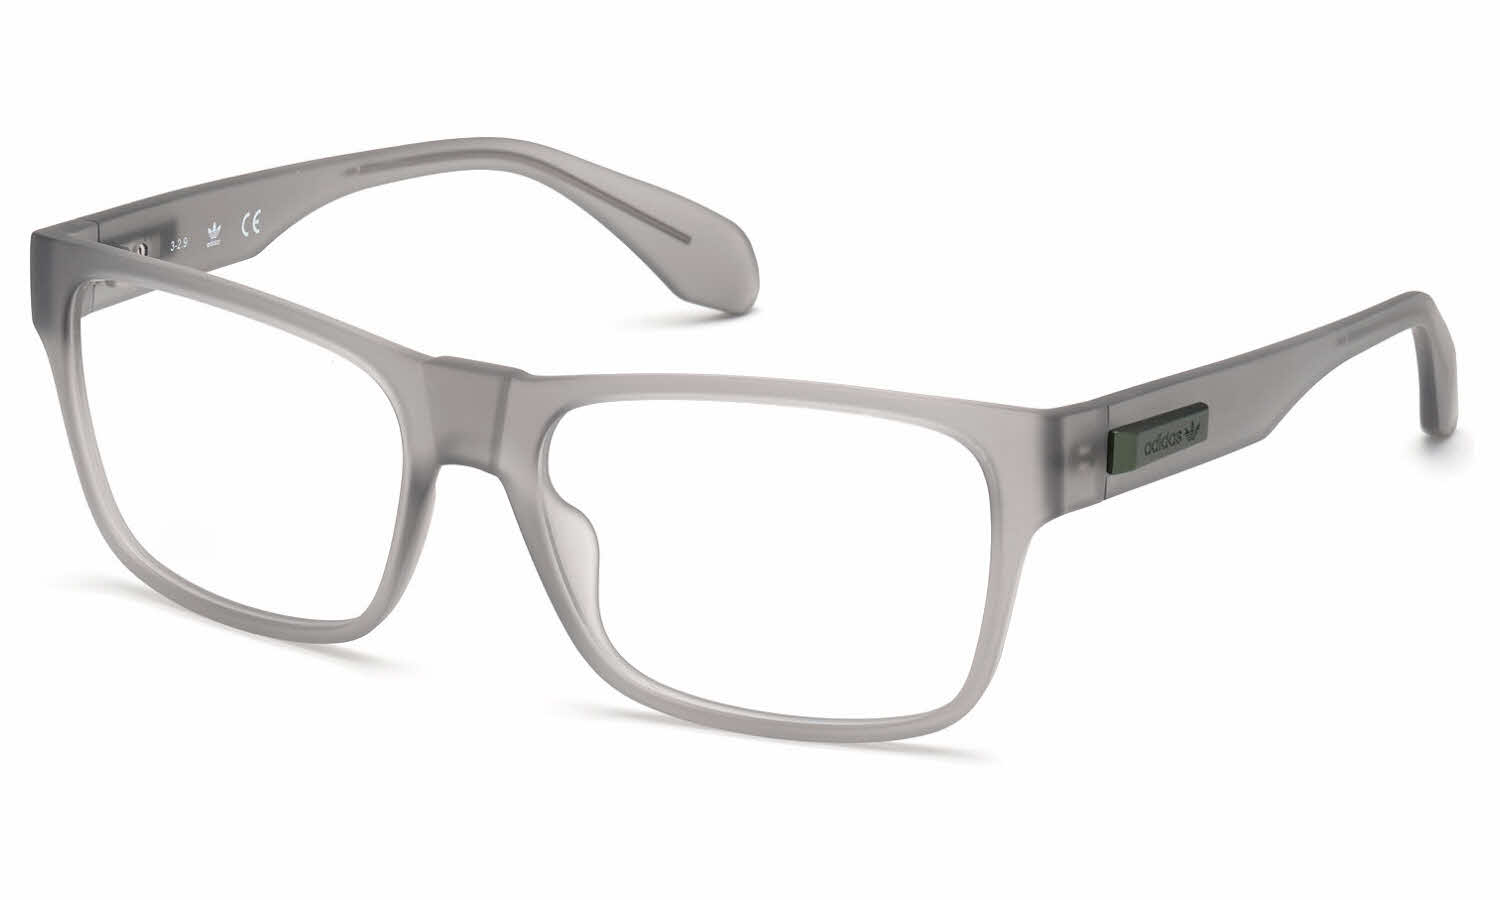 Adidas OR5004 Men's Eyeglasses In Grey